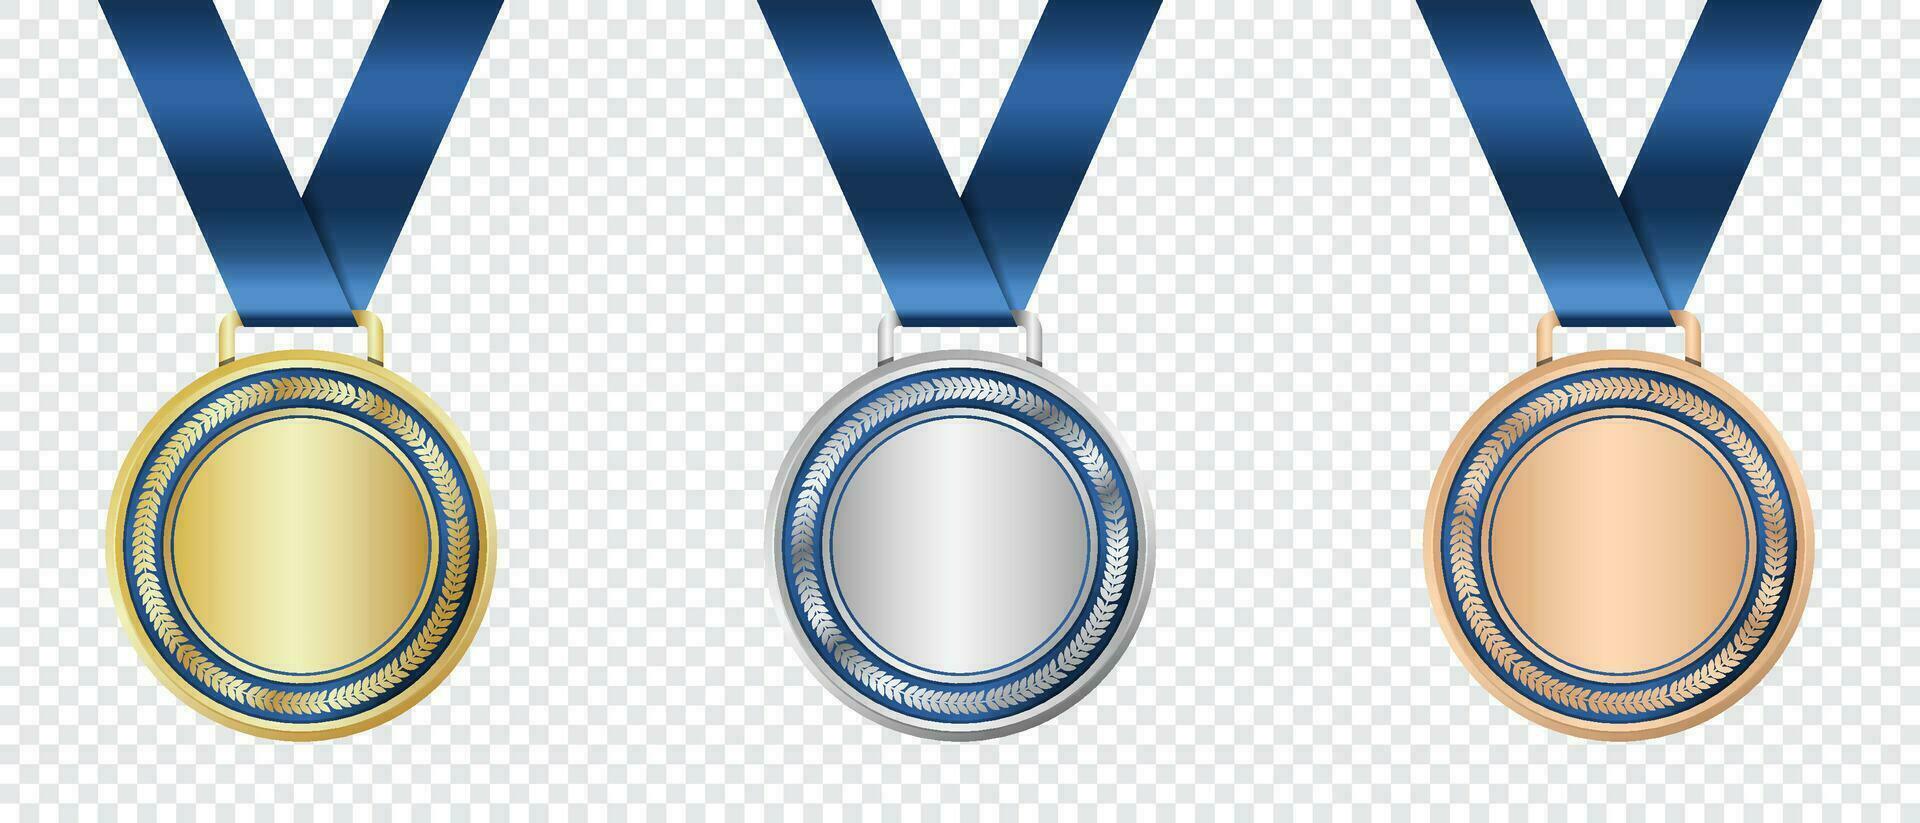 oro, plata, y bronce medalla. realista medalla colocar. premios para ganador. premio con cinta. vector ilustración